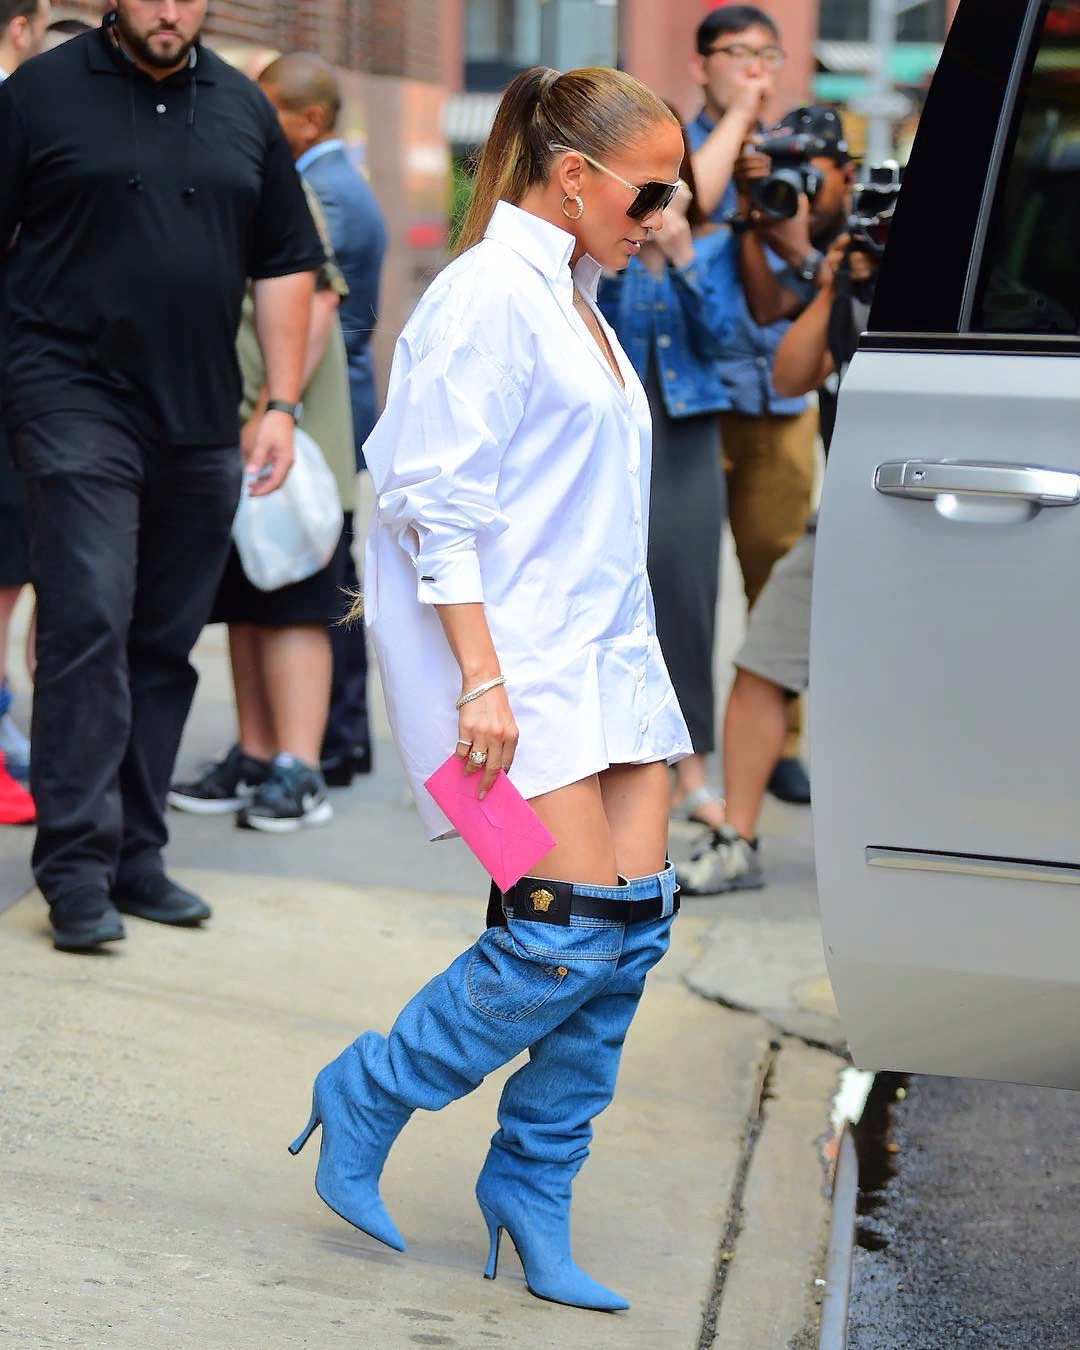 Сапоги или спущенные джинсы? Откровенный образ Джей Ло бурно обсуждают в соцсетях